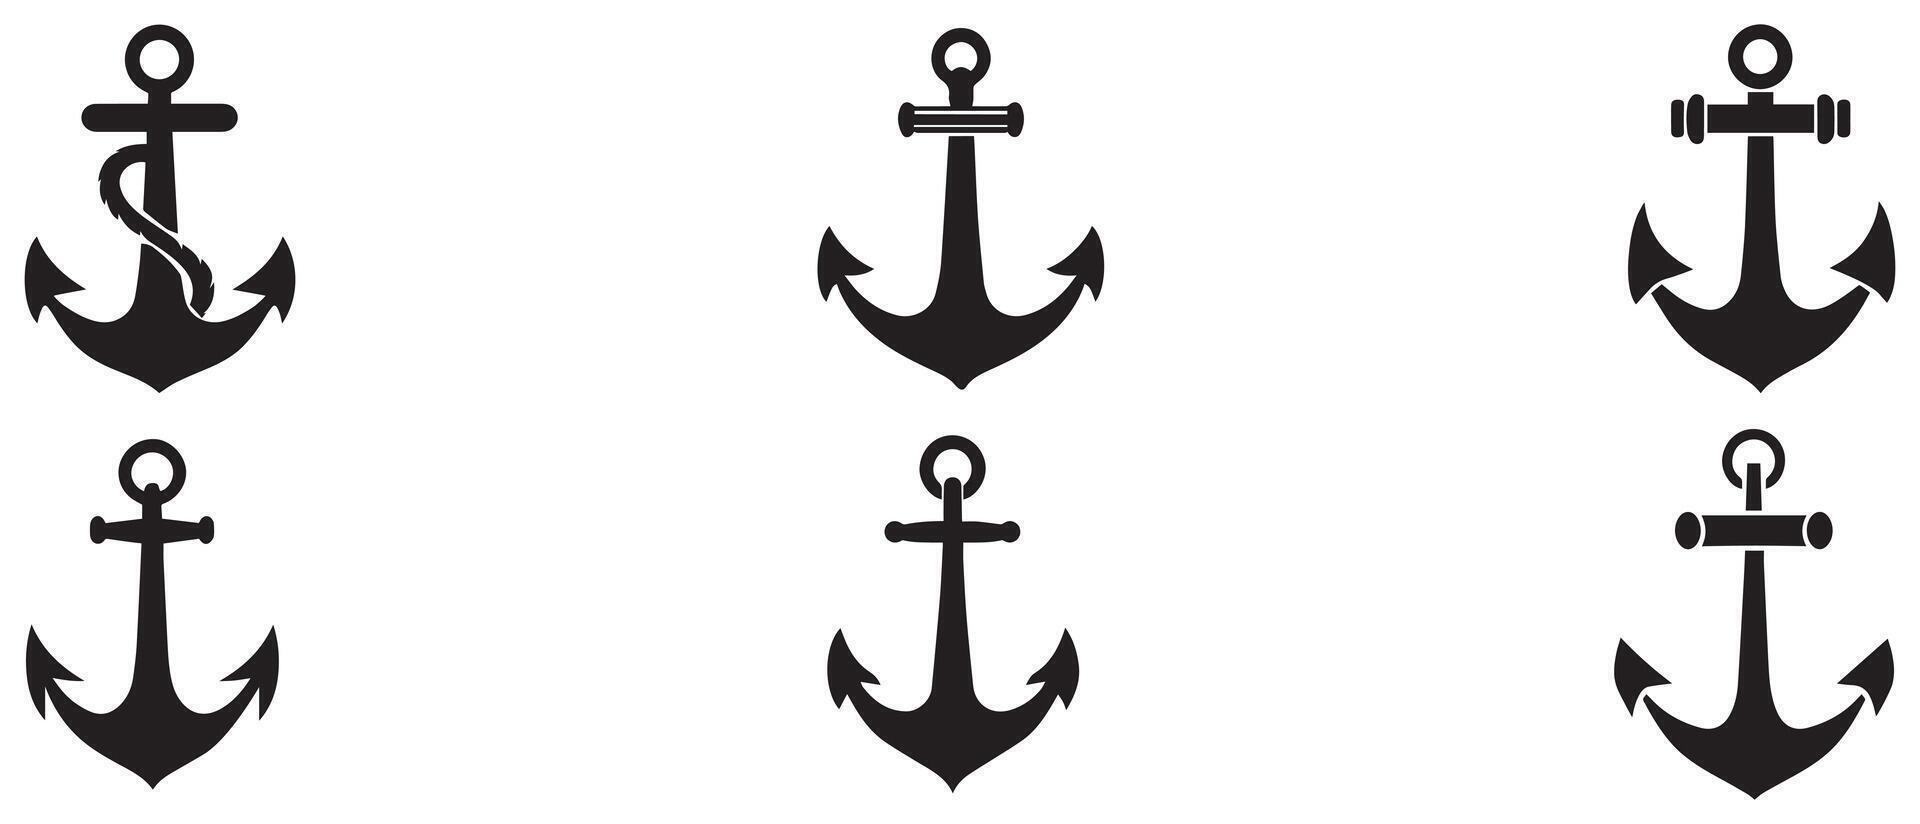 ankare havs hav svart ikon symbol båt pirat roder nautisk illustration design. vektor